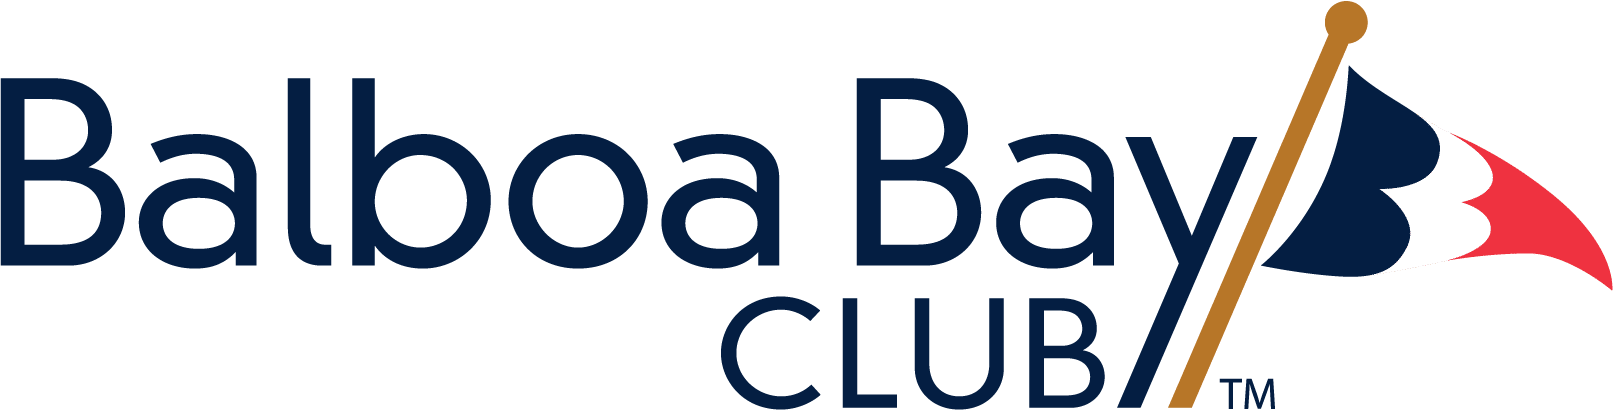 巴尔博亚湾俱乐部标志